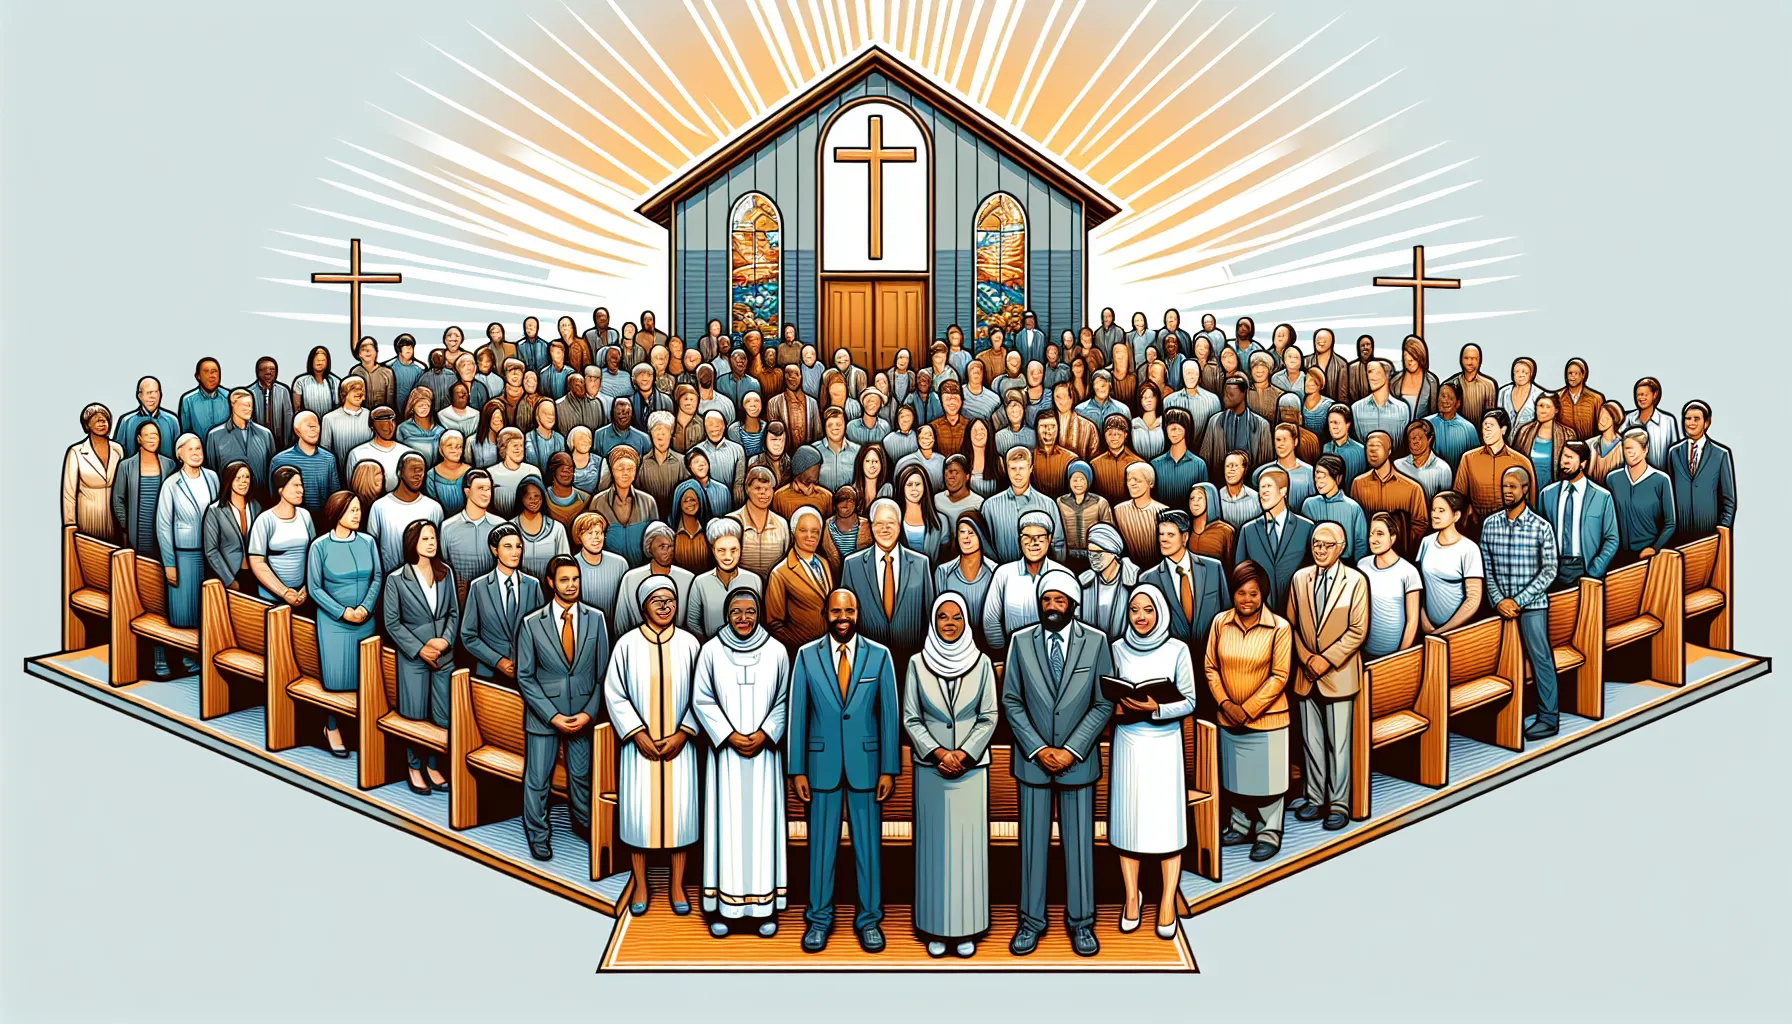 Imagen de una iglesia con un grupo de personas reunidas